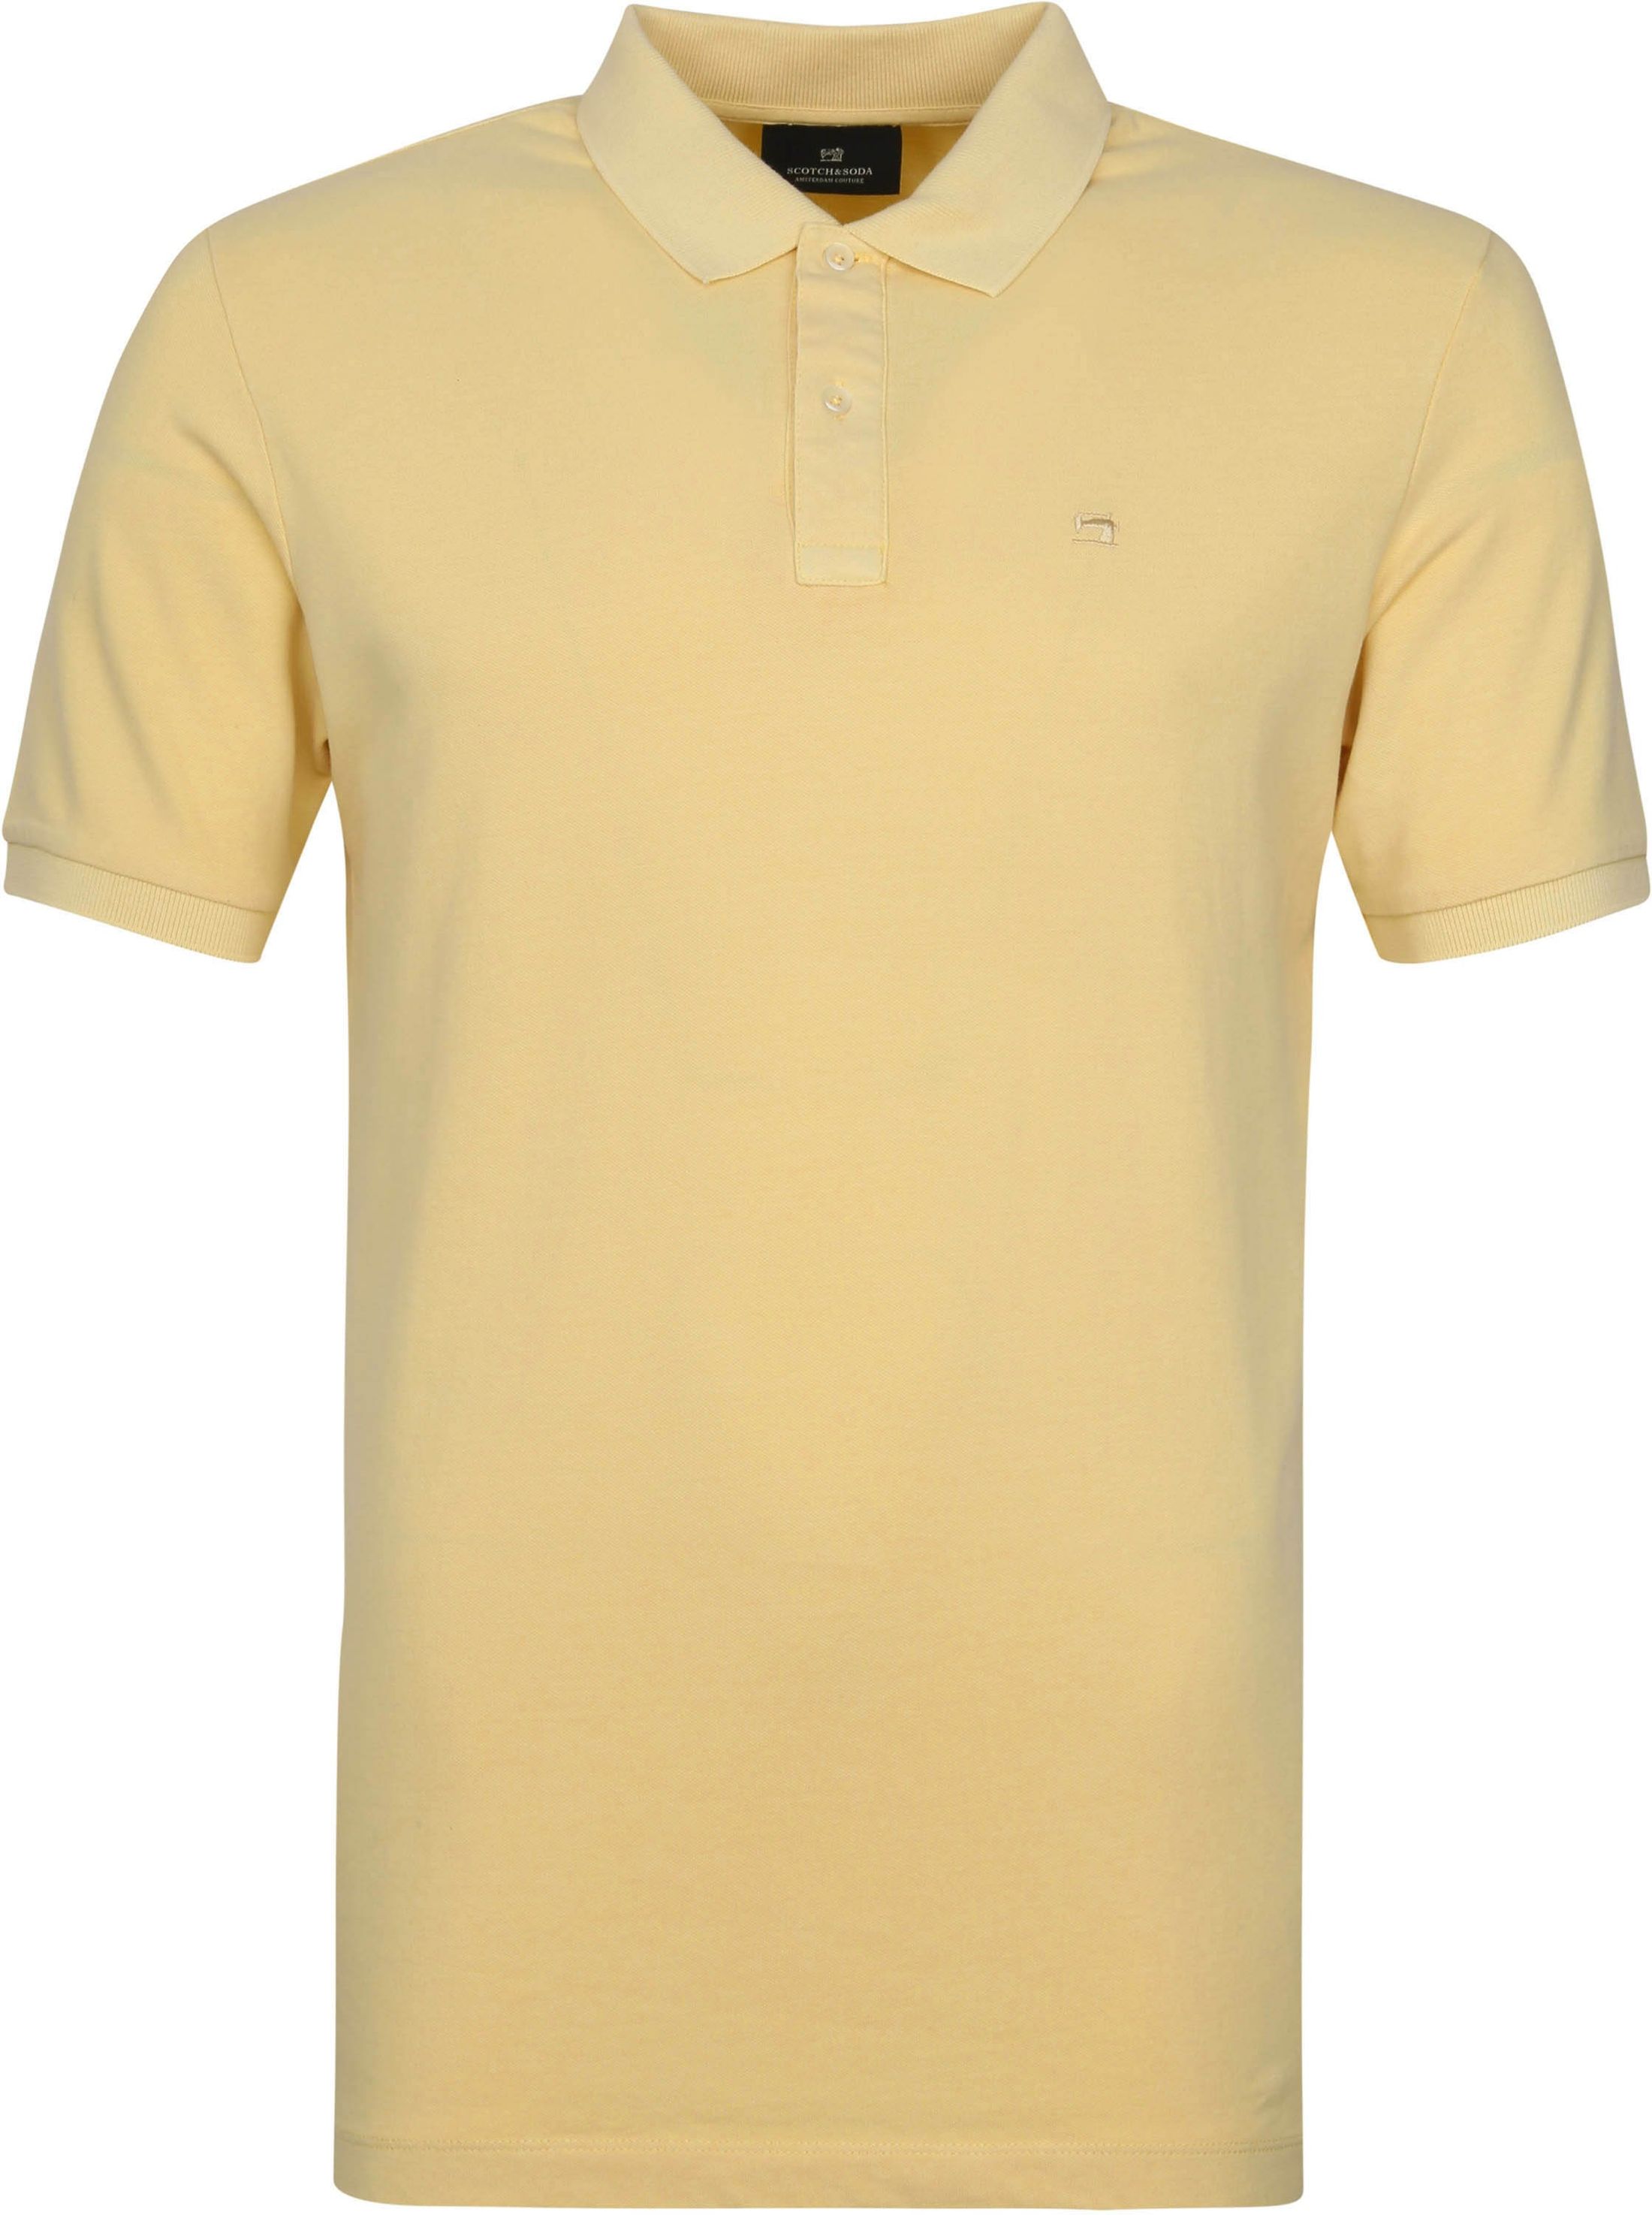 Scotch and Soda Polo Shirt Garment Dye Yellow size L